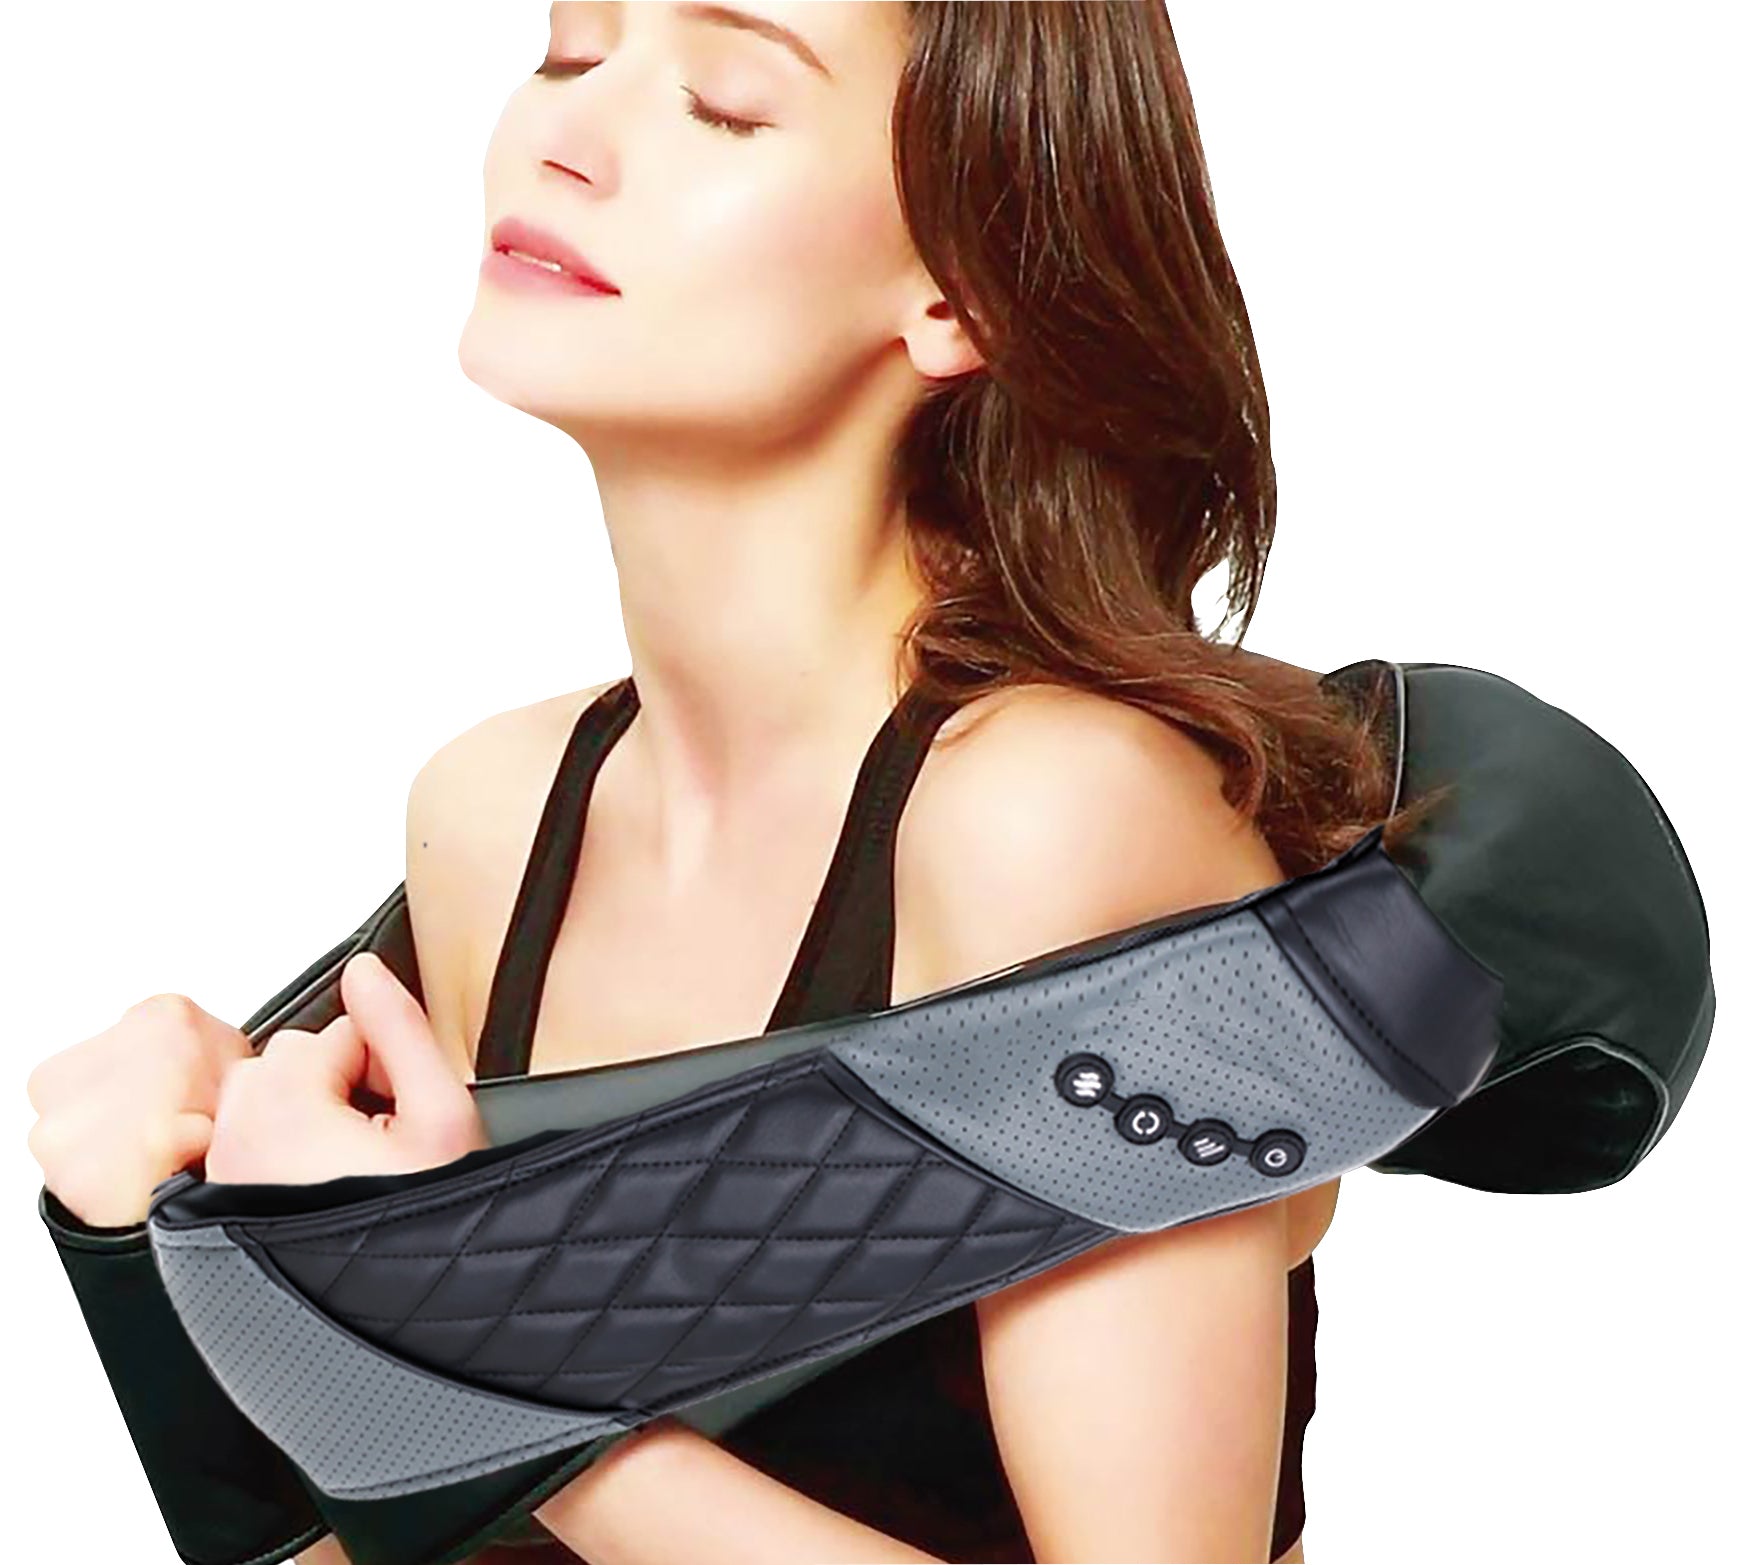 TESMED CERVICAL TECHNOLOGY 4.0 MASSAGER: Entspannendes Massagegerät für Nacken und Schultern, fortschrittliche Technologie.